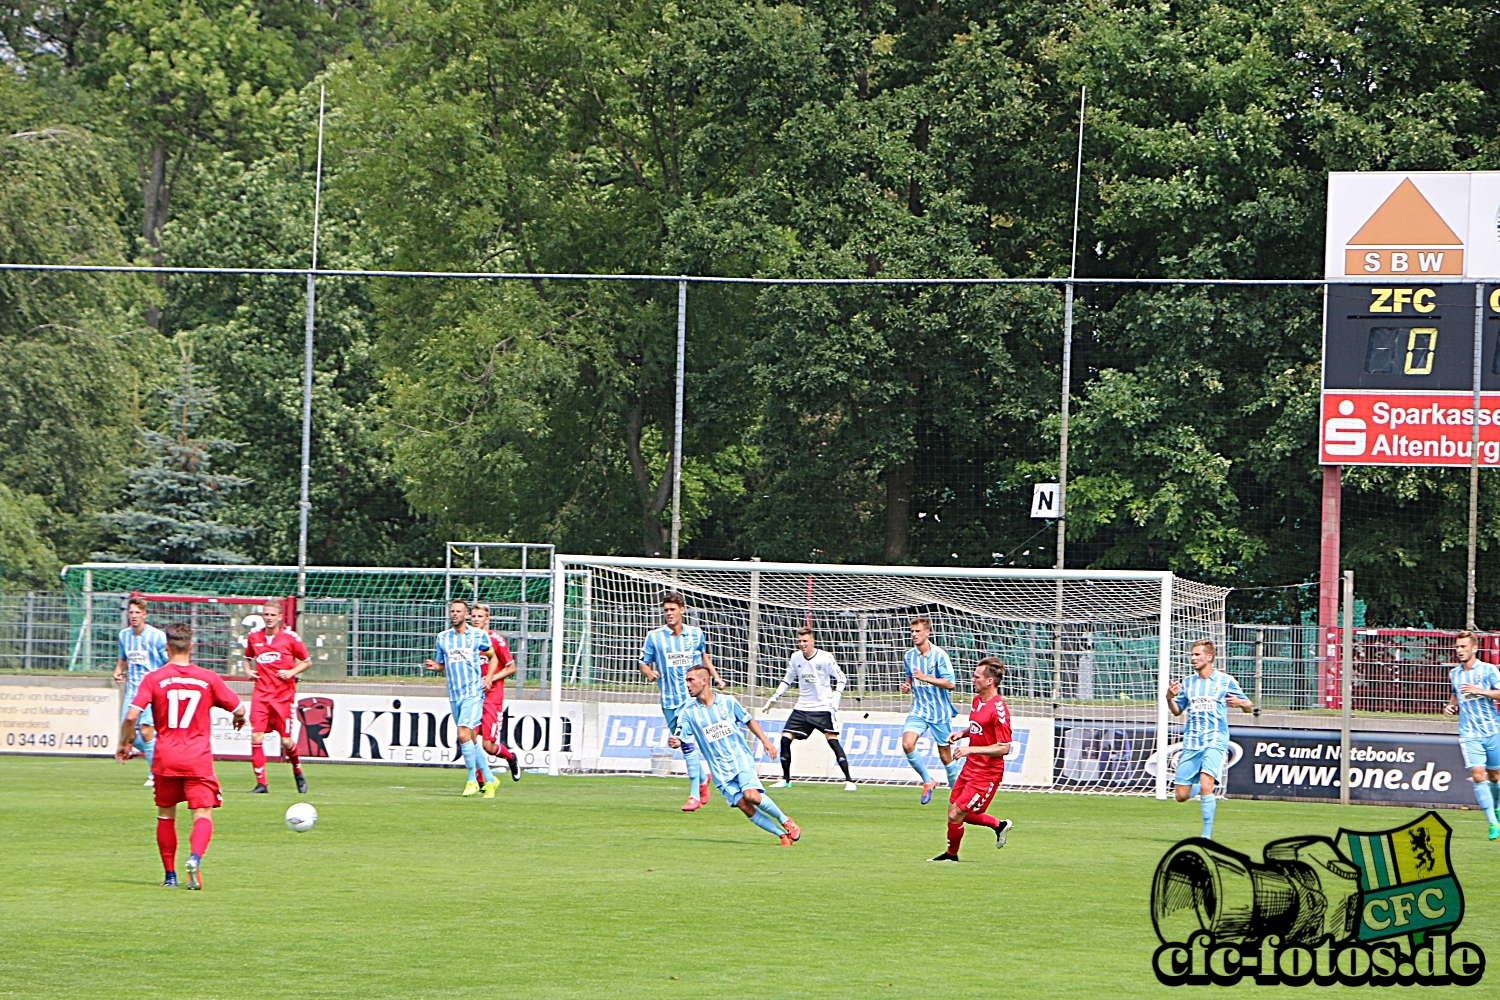  ZFC Meuselwitz - Chemnitzer FC 0:1 (0:0)